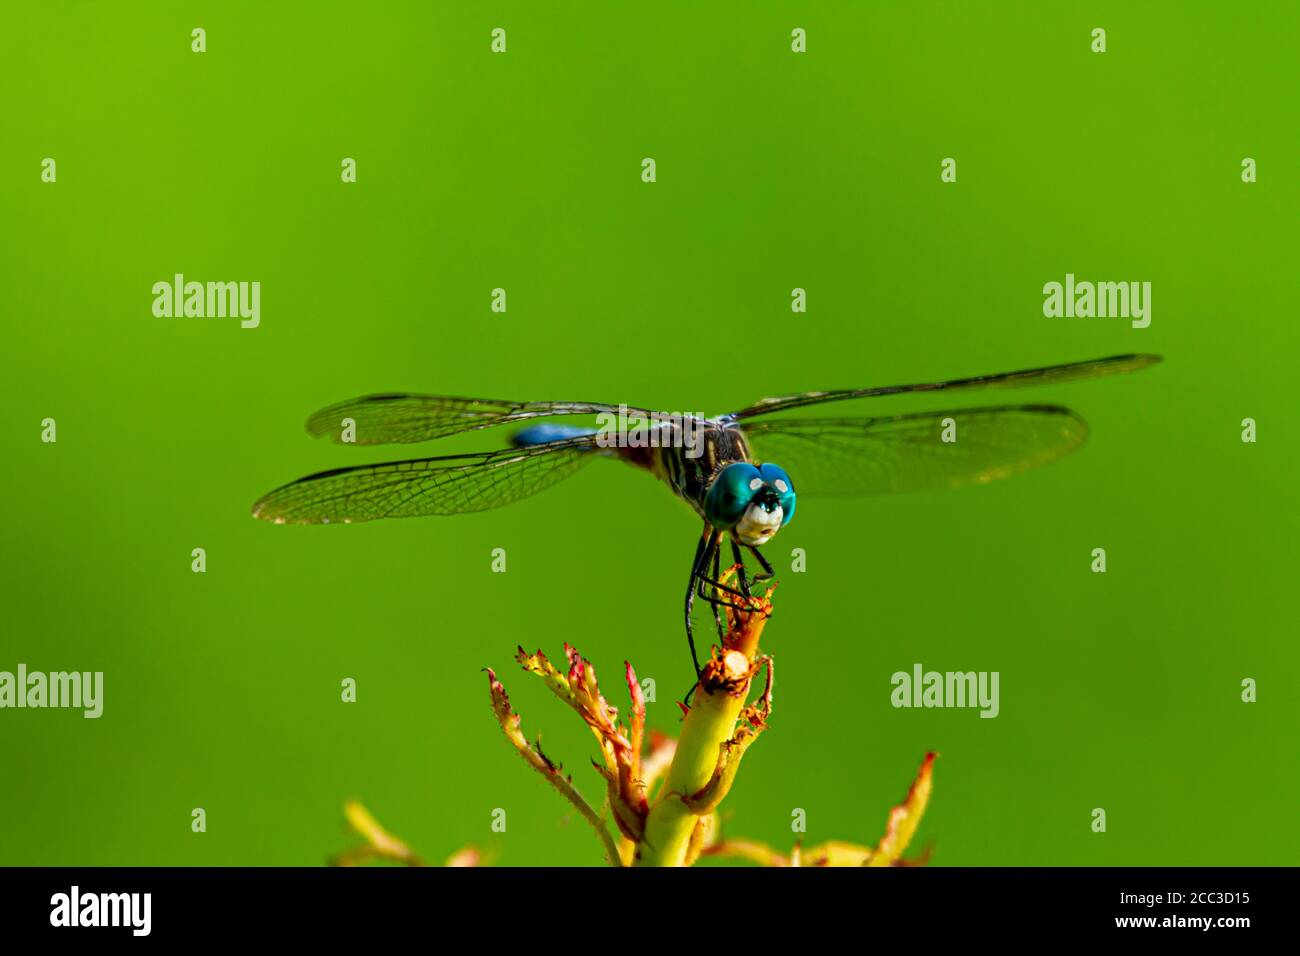 Une image isolée en gros plan d'une libellule dasher bleu vif (Pachydipax longipennis) sur un bâton. Cette photo de vue latérale affiche des dégradés de couleurs Banque D'Images